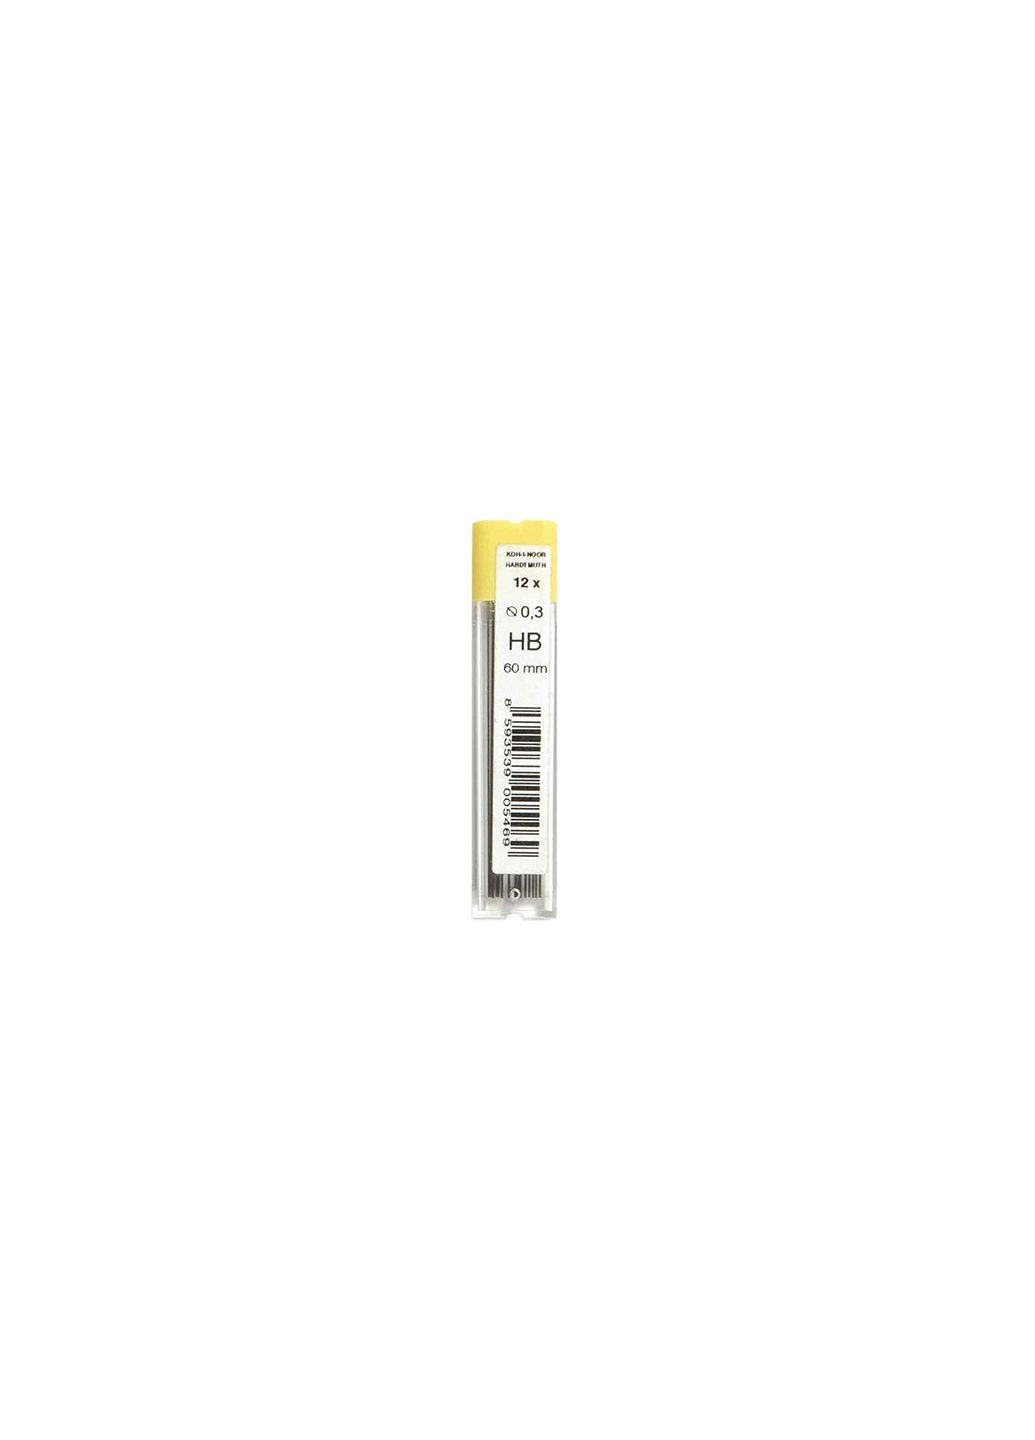 Грифели для карандаша механического 0,3 мм., HB, Kohi-noor 4132 Koh-I-Noor (280941462)